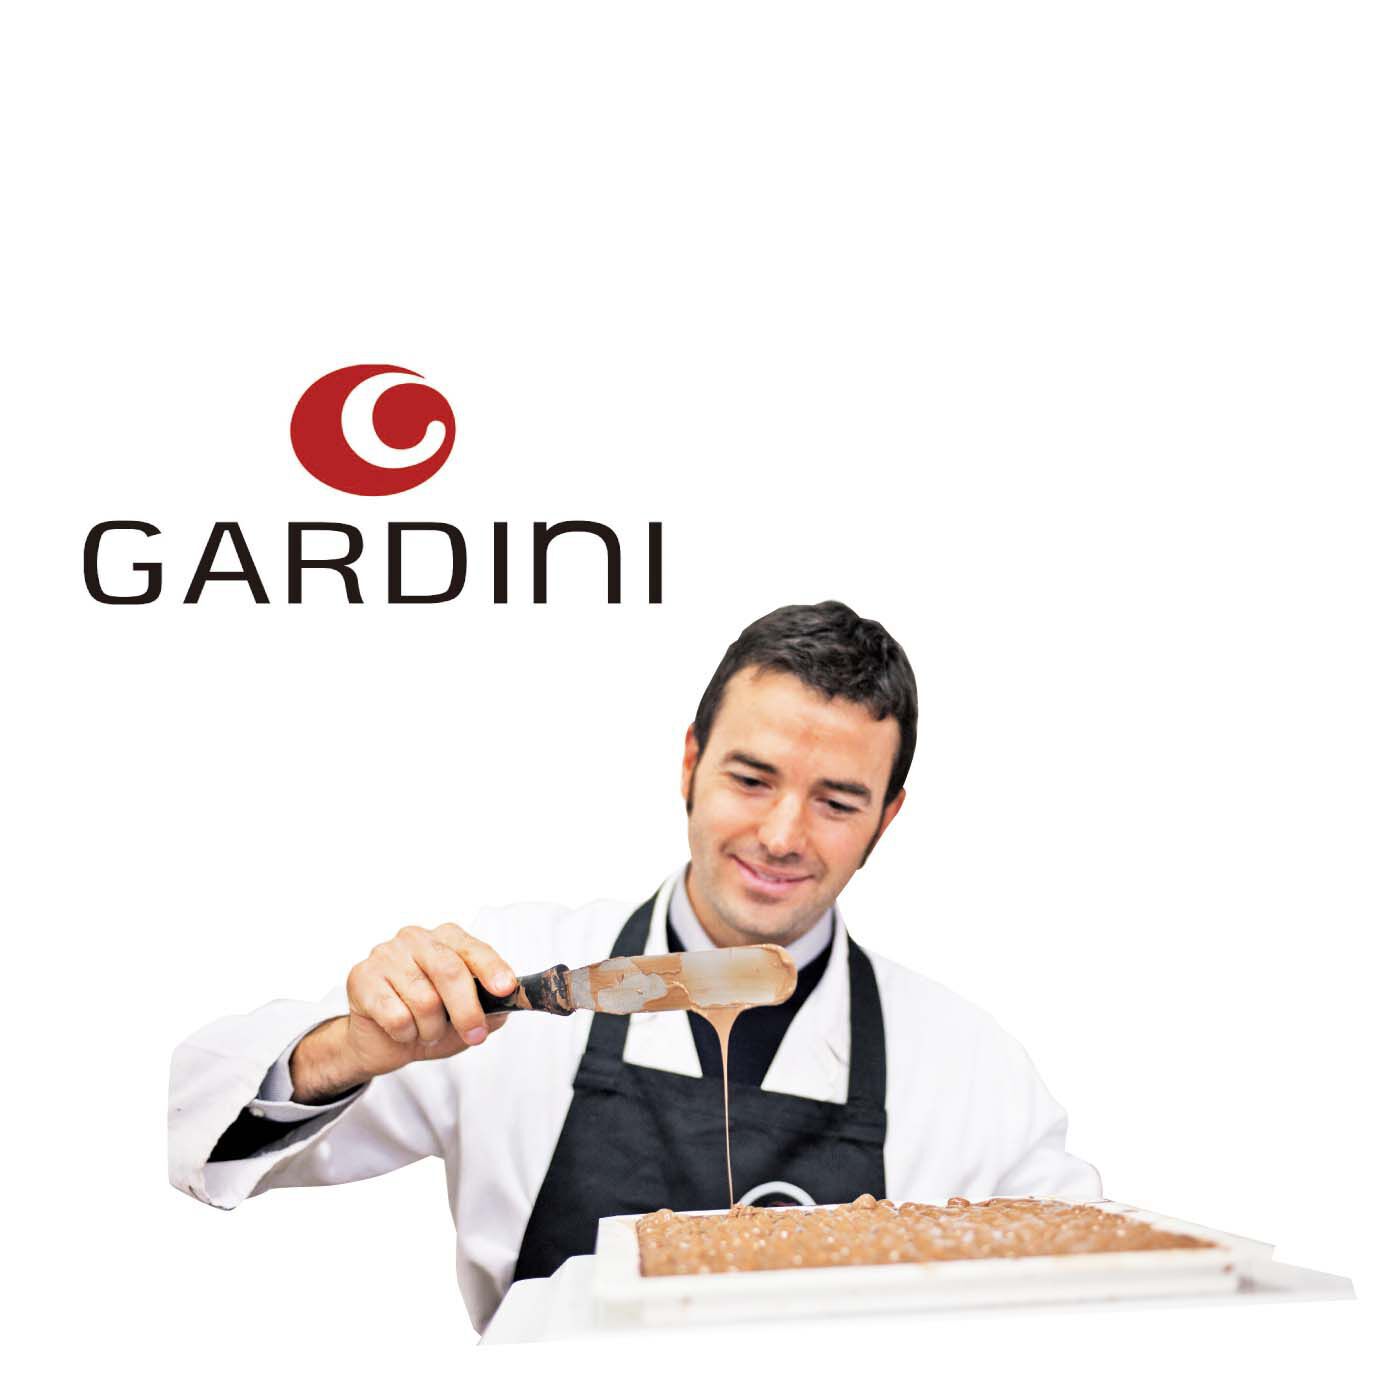 幸福のチョコレート|ガルディーニ　ピスタチオクレミノ|【ガルディーニ】自然豊かなイタリア エミリア ロマーニャ州の美食の町フォルリで革新的なチョコレート作りに励むガルディーニ ブラザーズ。この街で生まれ育った彼らがタッグを組んで30年以上。さまざまな賞を獲得し、イタリアでは有名な存在に。